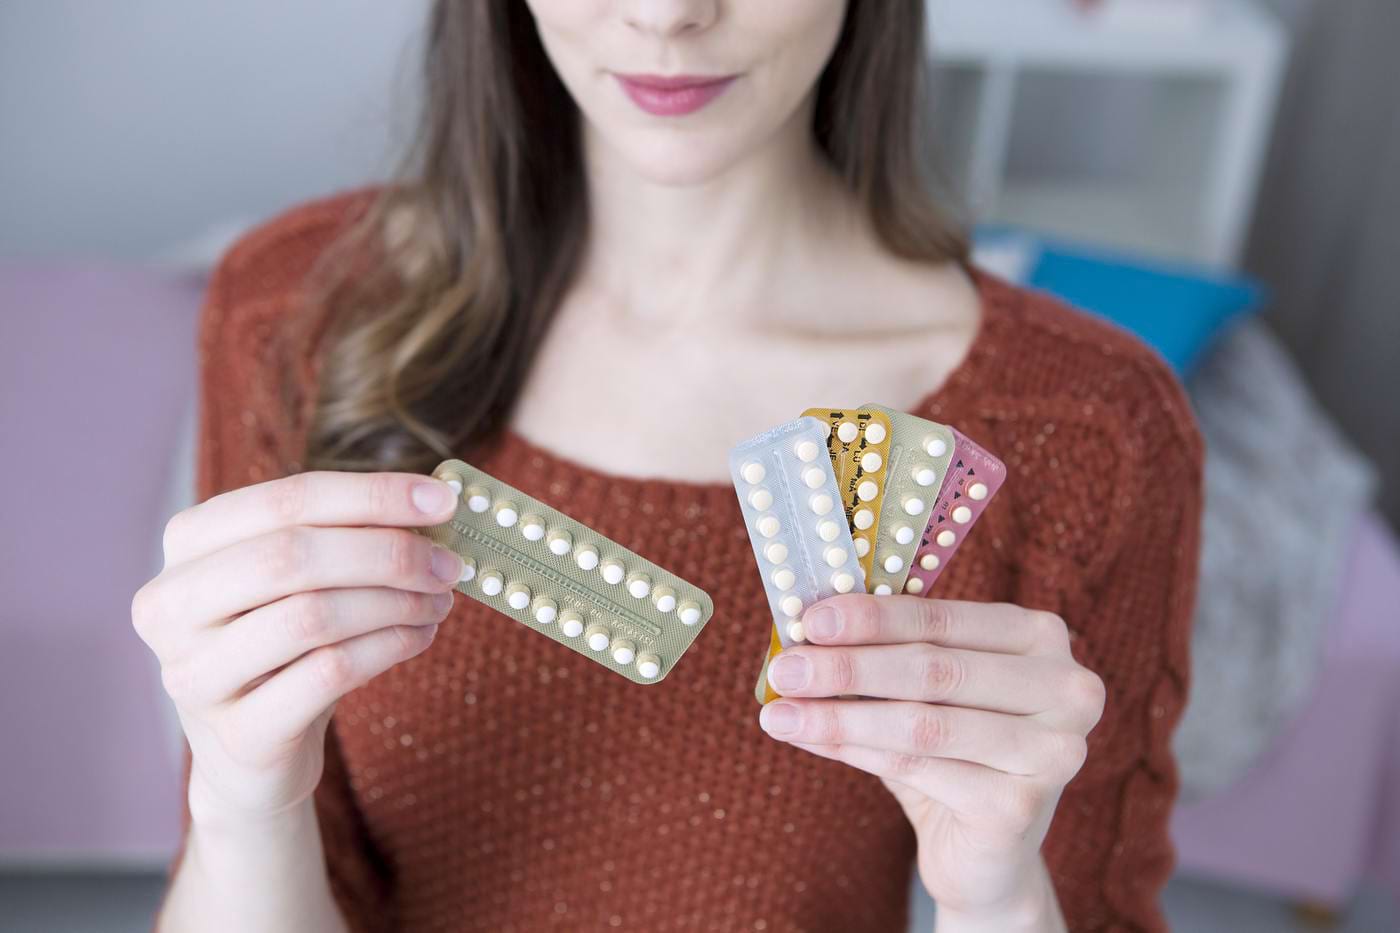 este posibila pastile contraceptive în varicoza tricotaje cu vene varicoase cumpara